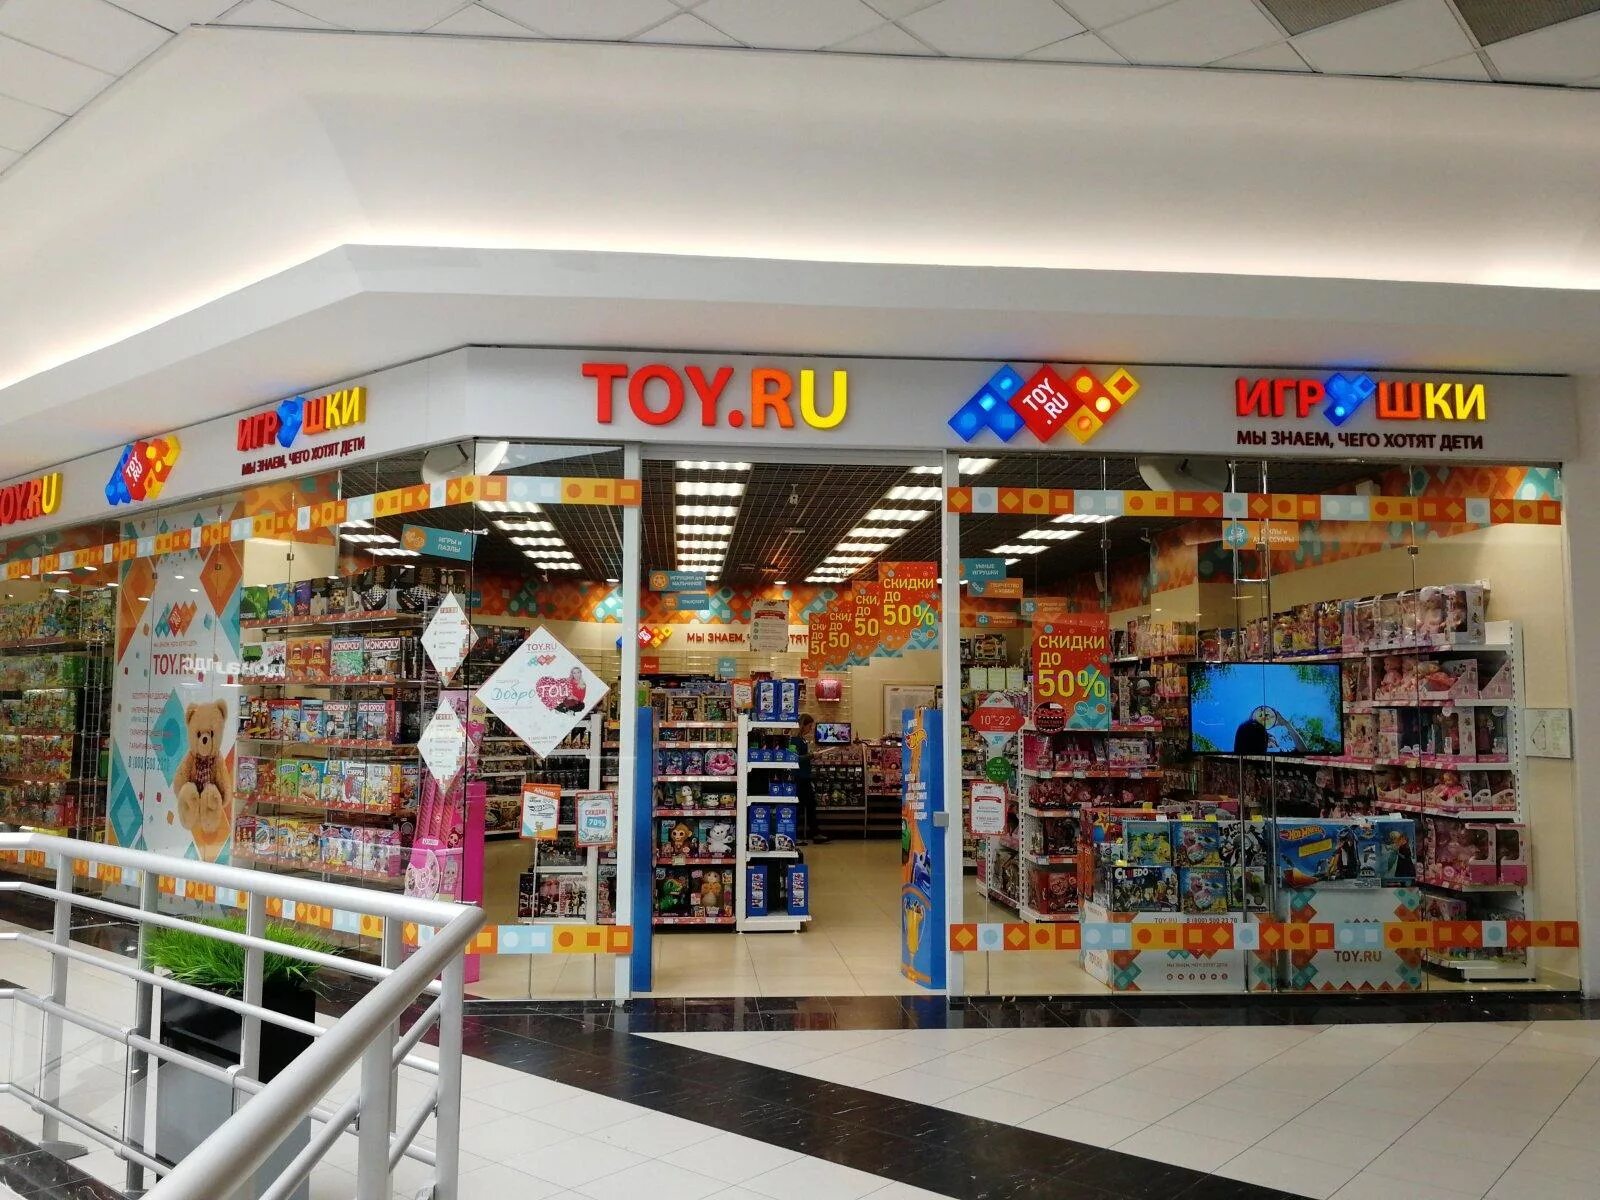 Тою ру магазин. Toy.ru интернет-магазин. Той.ру магазин игрушек. Детский магазин игрушек. Toy ru игрушки.